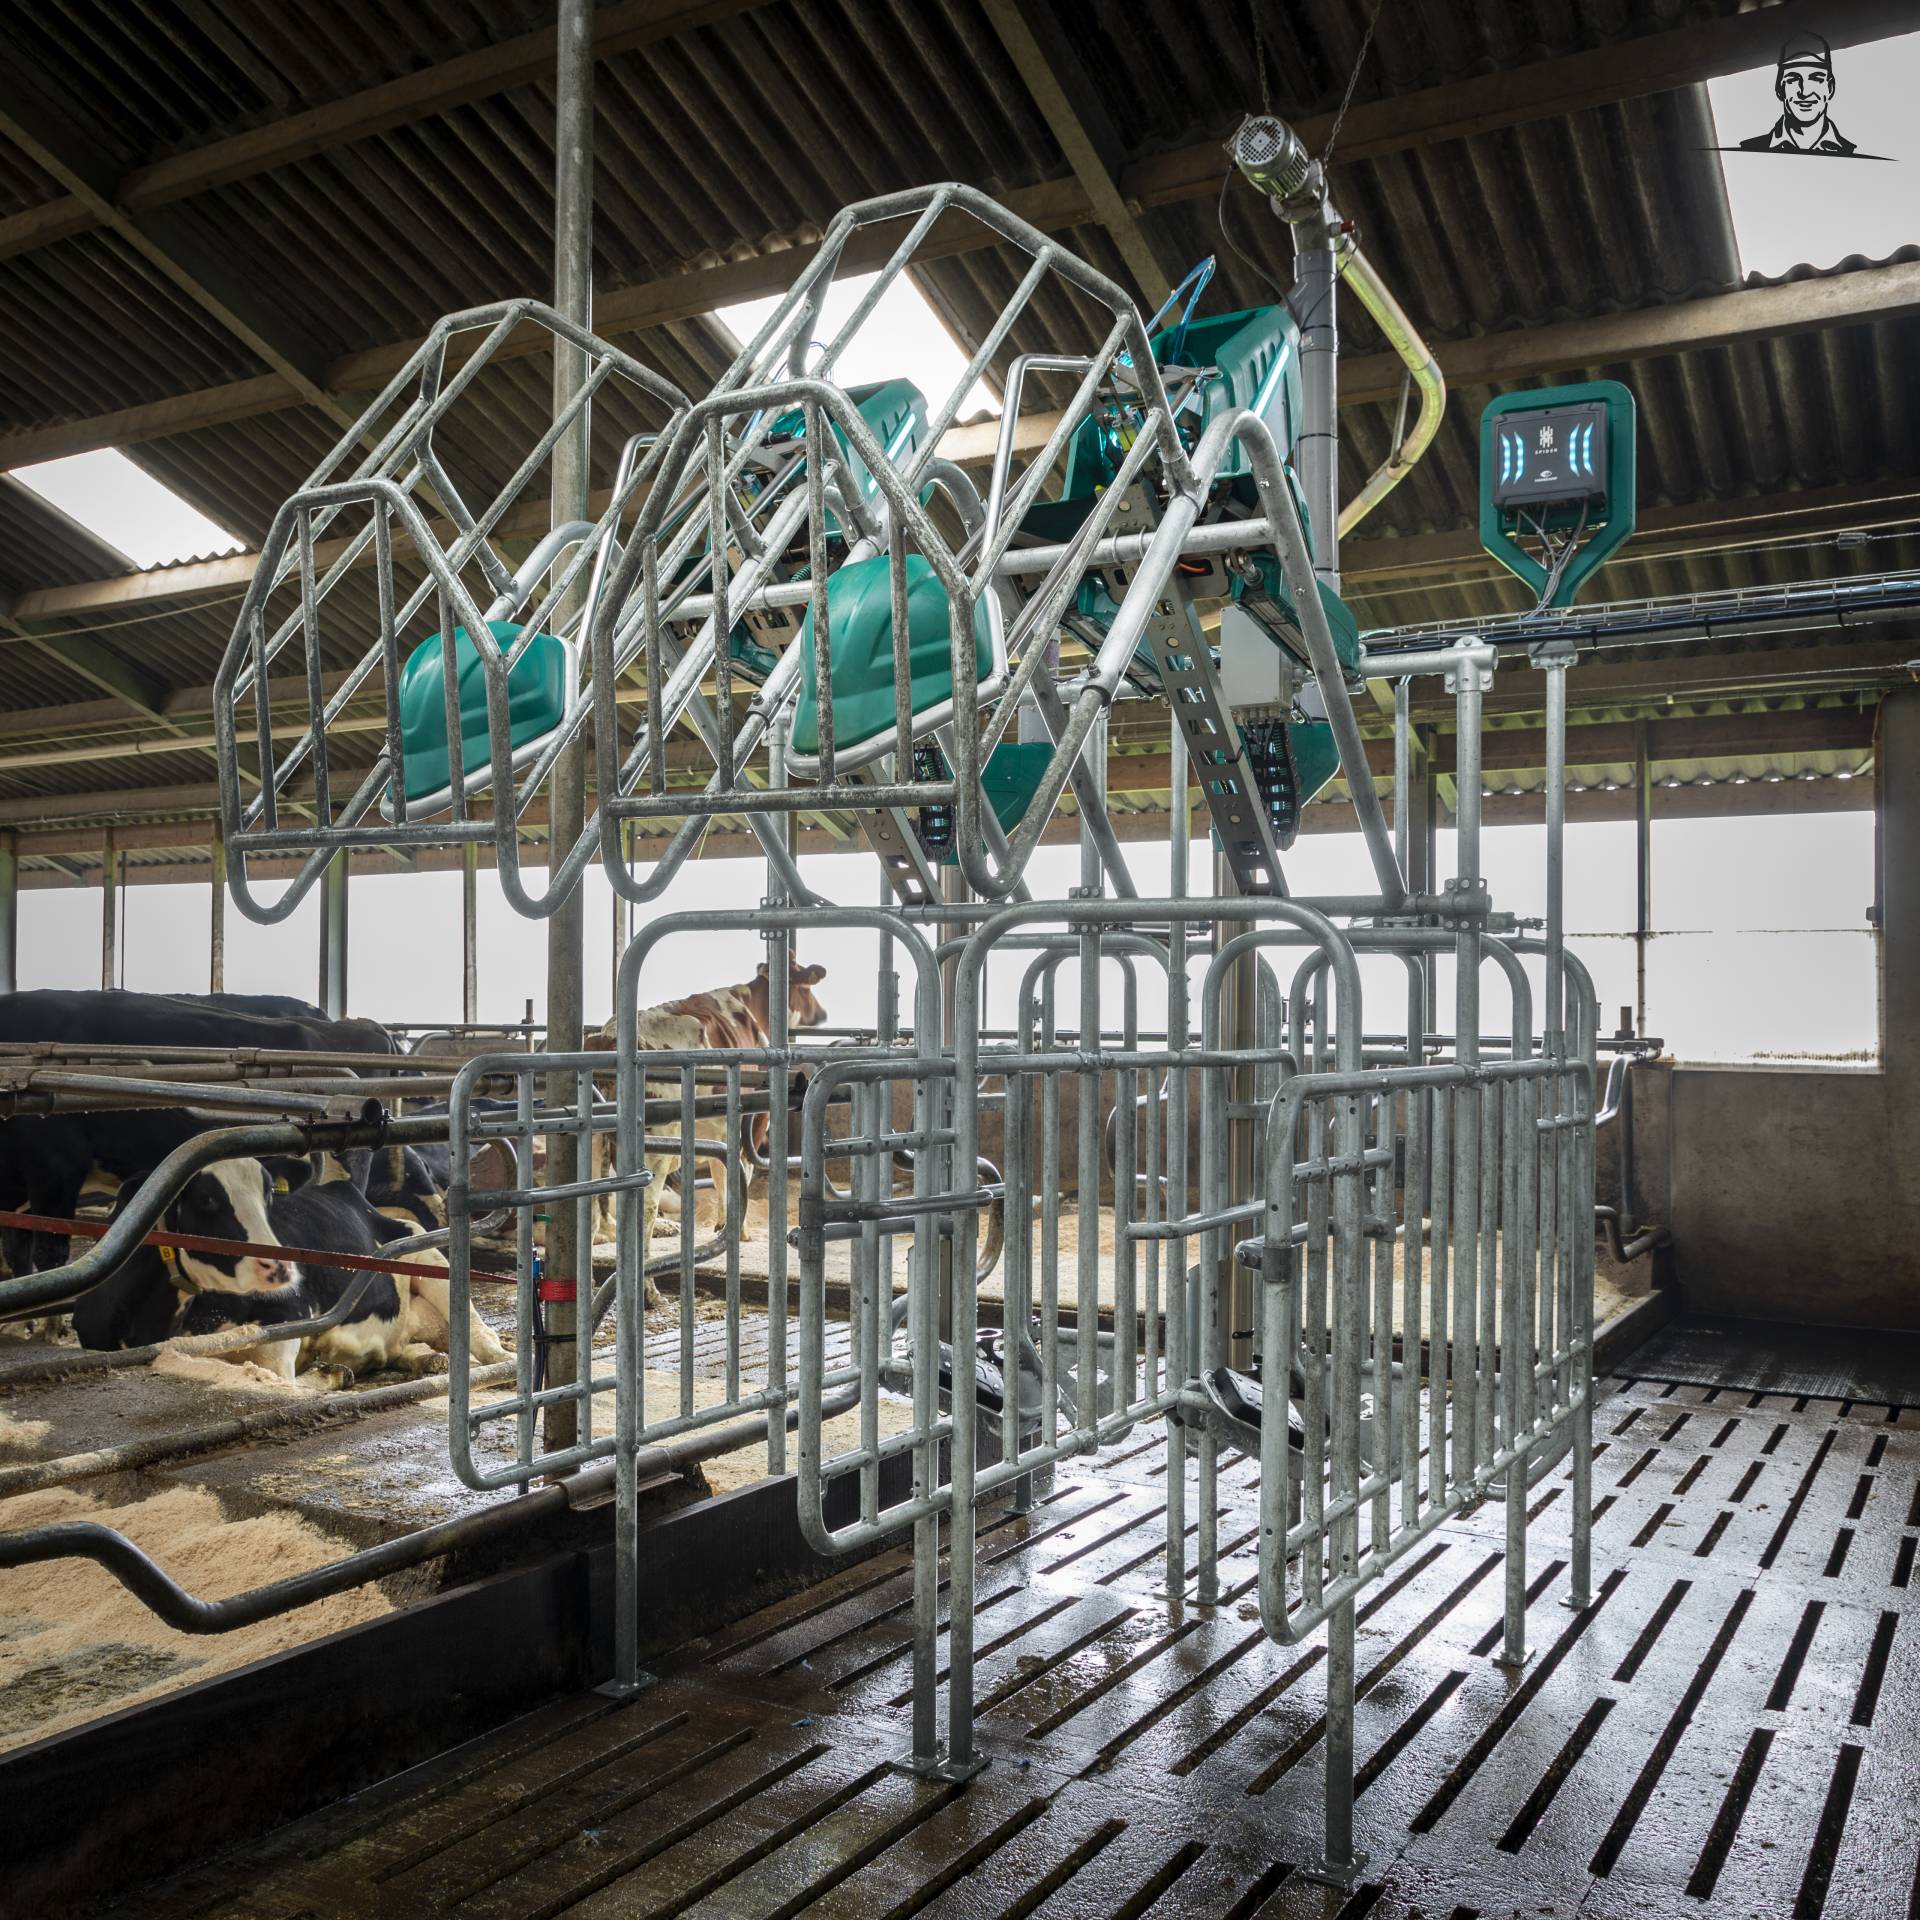  CowToilet van Hanskamp vermindert stikstofverlies in melkveestal  van Grasbaal